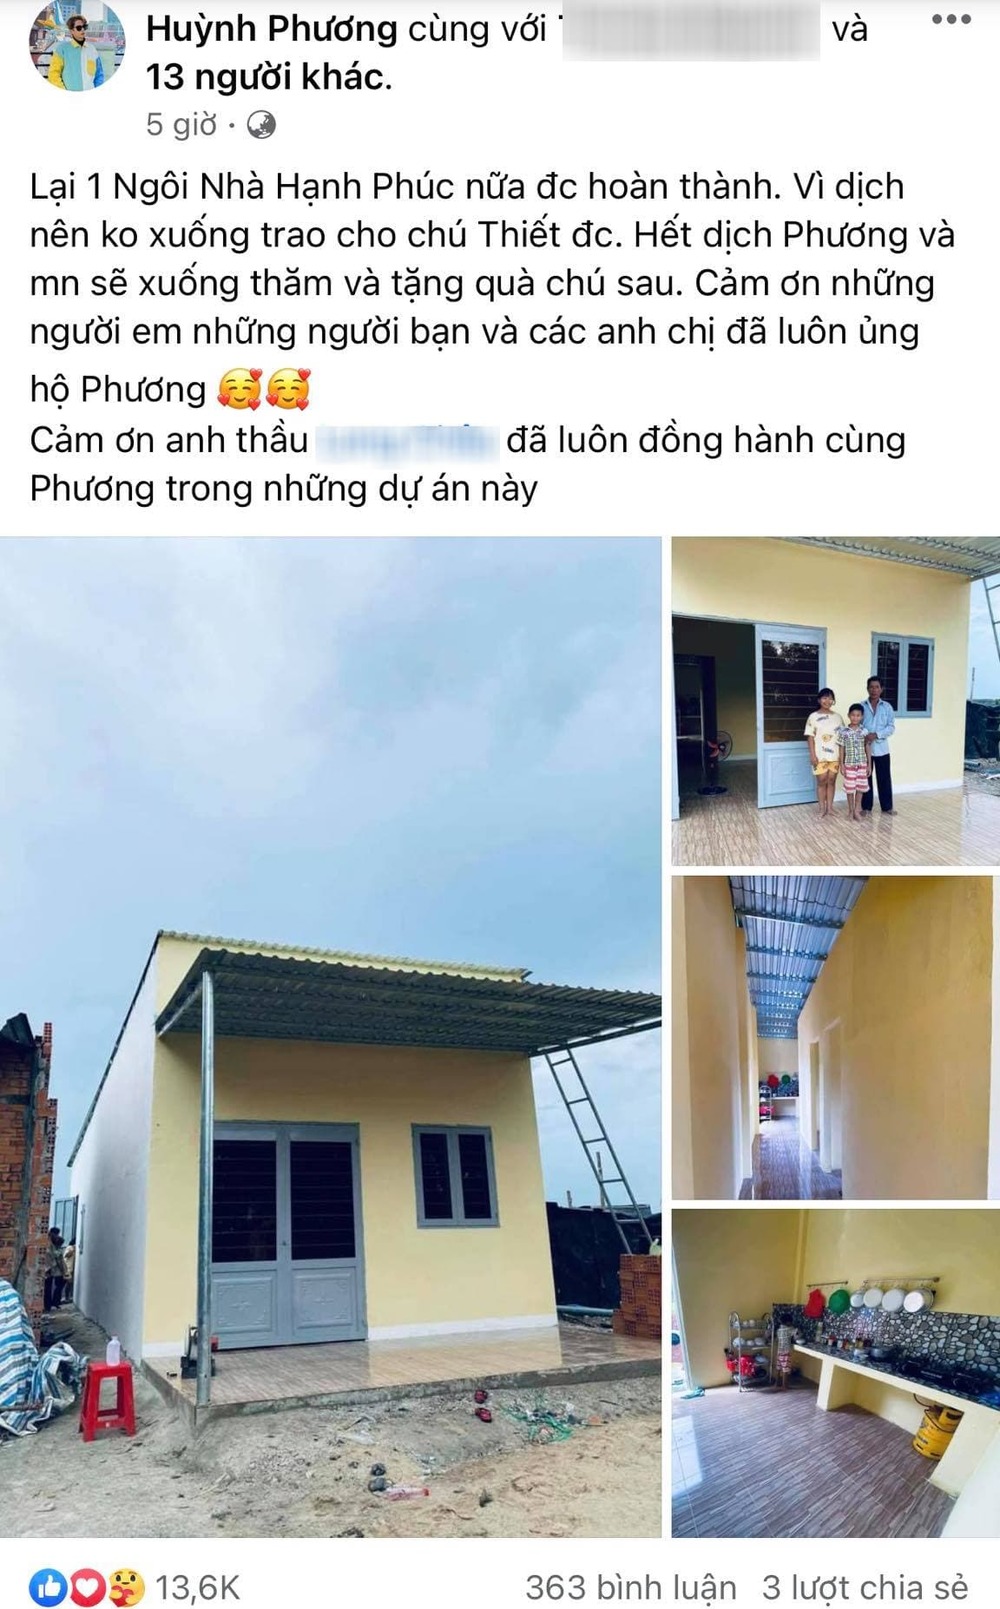  
Huỳnh Phương khoe thành quả ngôi nhà mới cho người nghèo. (Ảnh: Chụp màn hình)